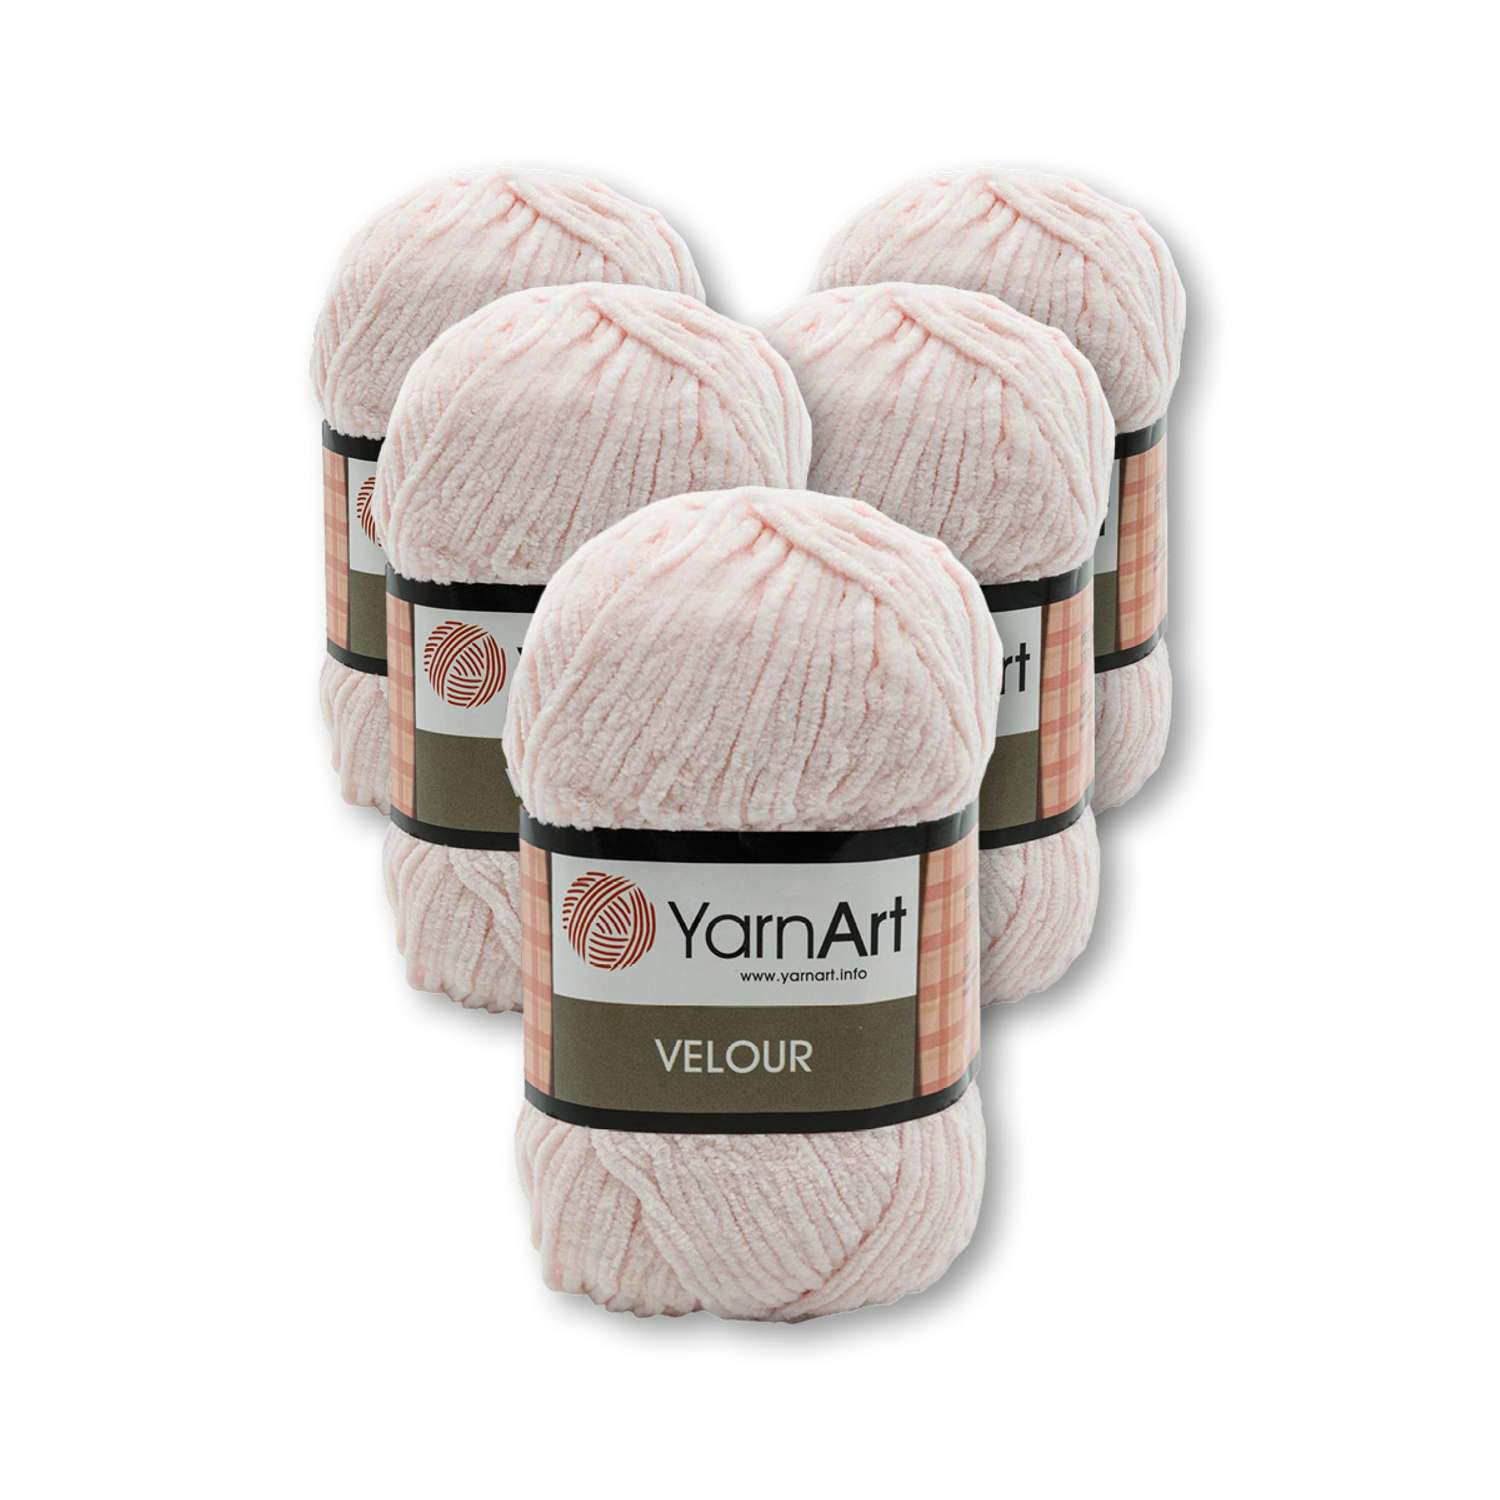 Пряжа для вязания YarnArt Velour 100 г 170 м микрополиэстер мягкая велюровая 5 мотков 866 нежно-розовый - фото 3